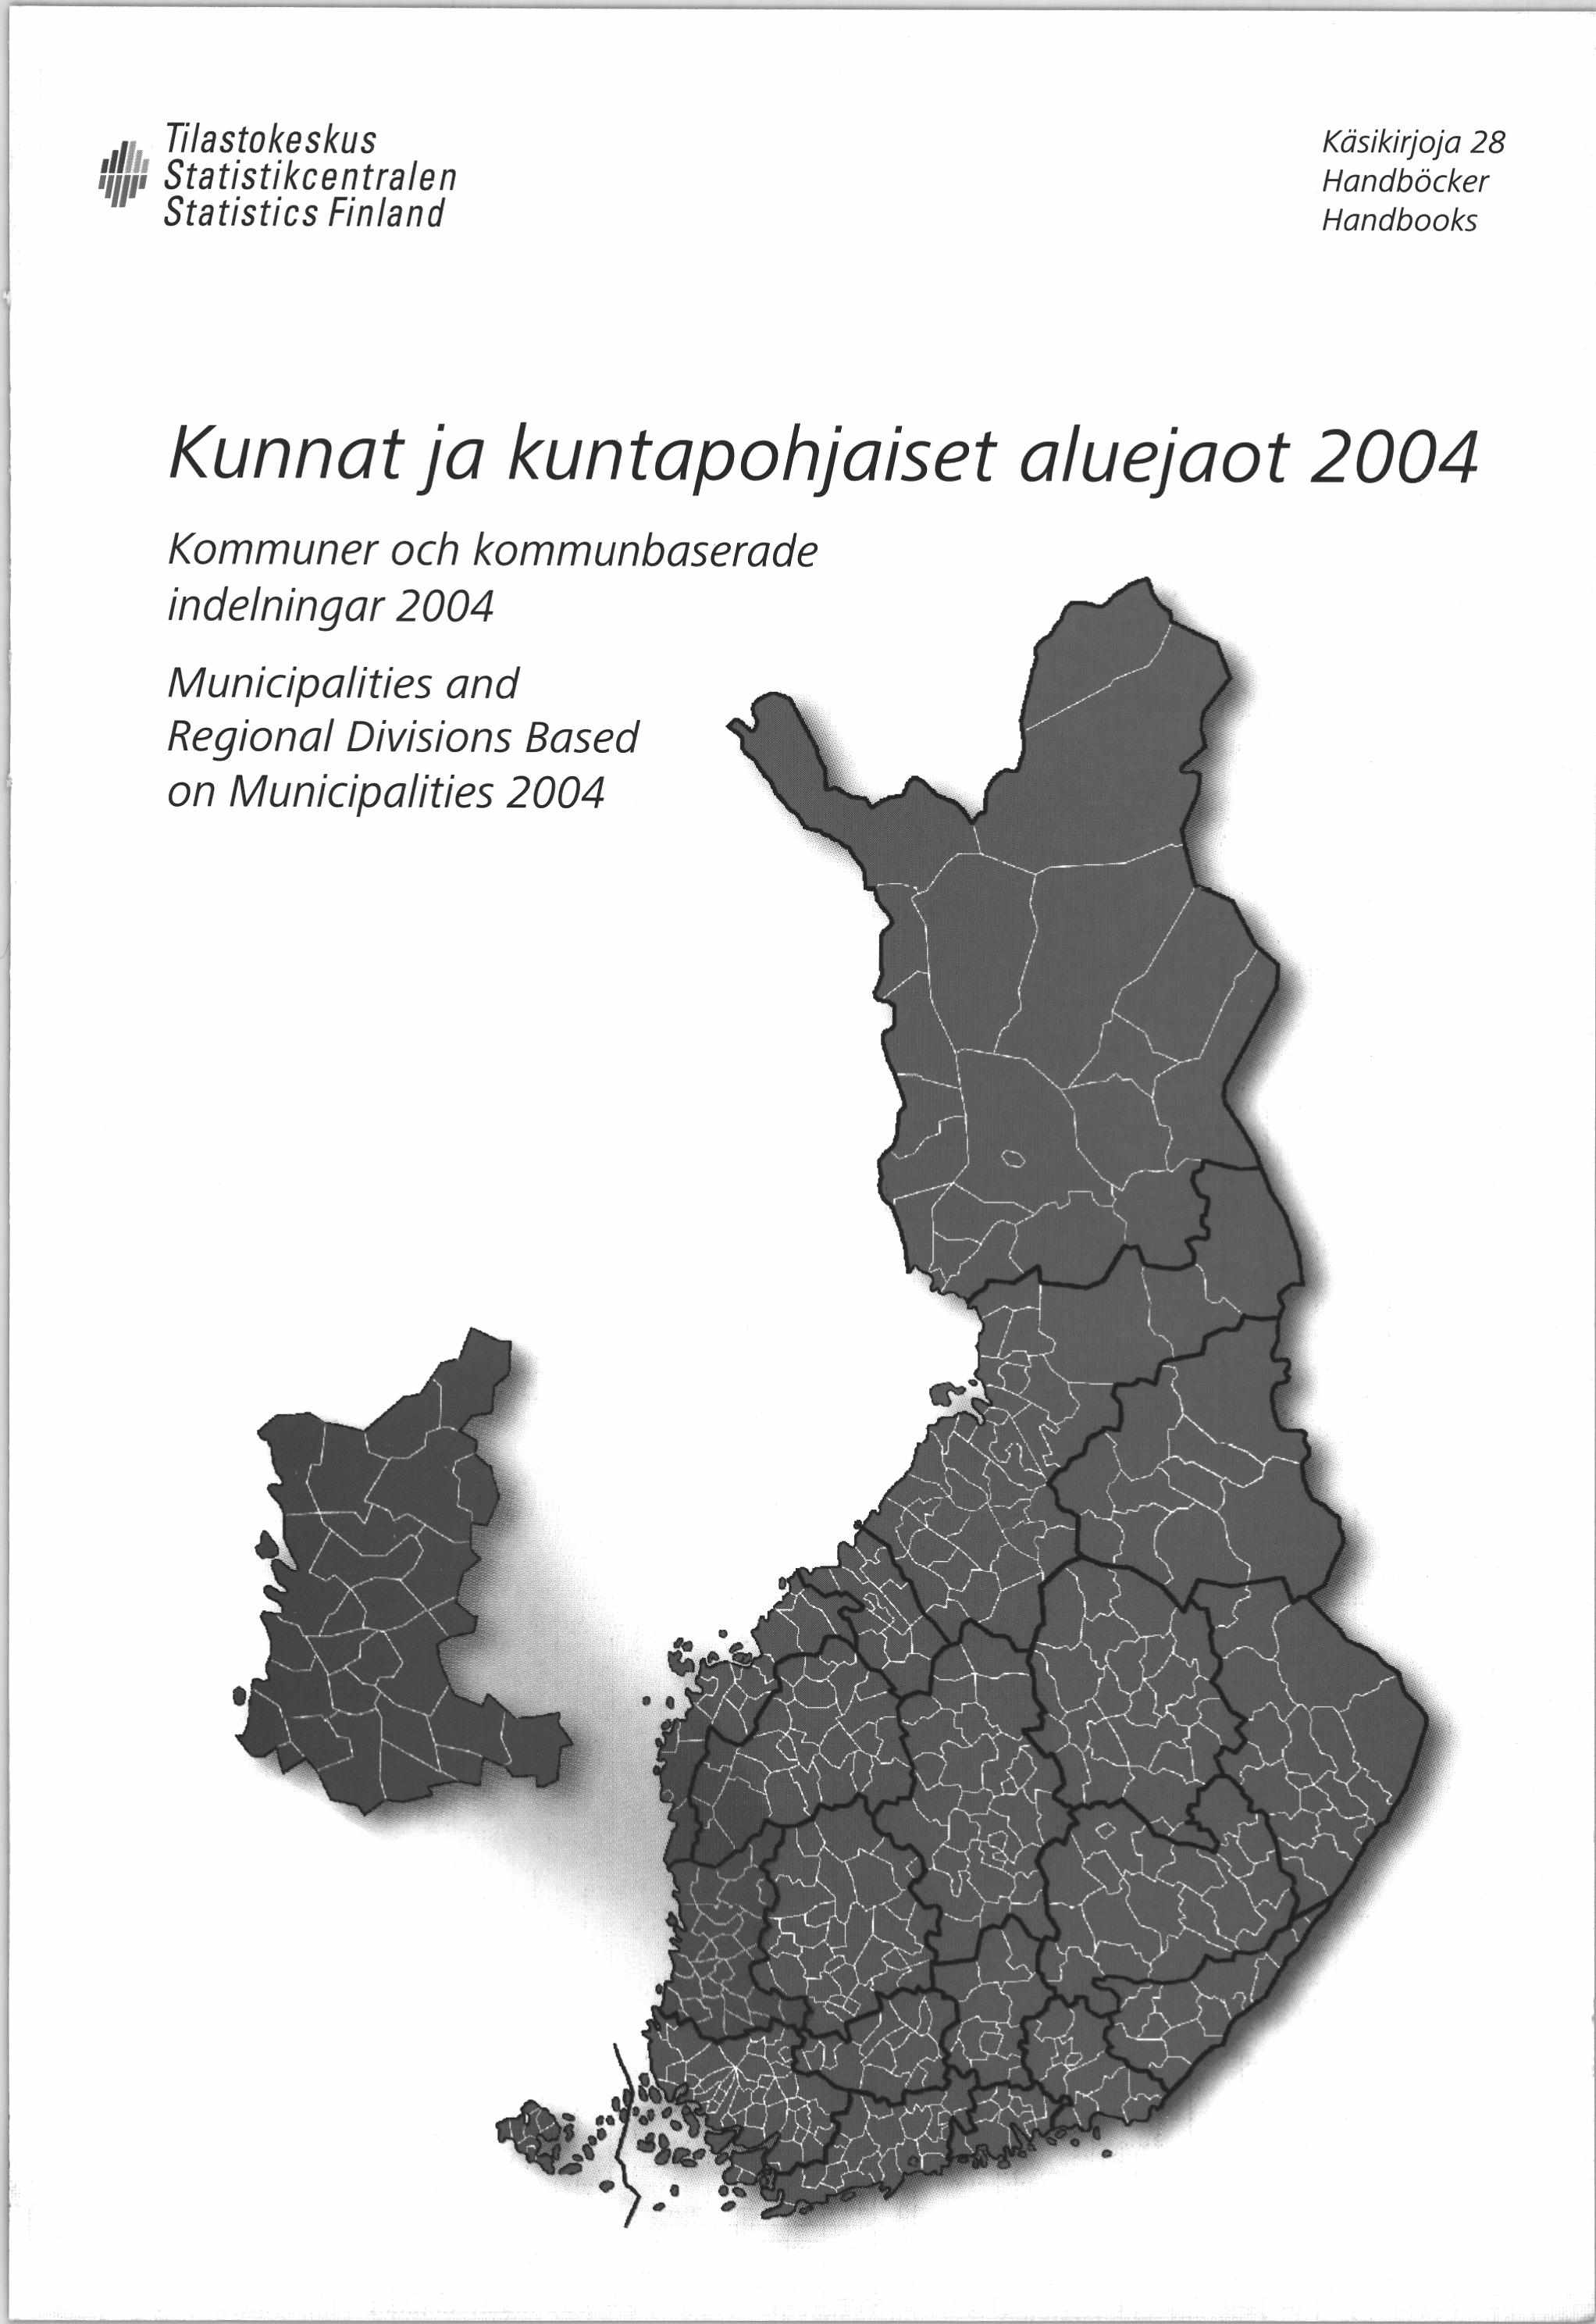 Tilastokeskus Statistikcentralen Statistics Finland Käsikirjoja 28 Handböcker Handbooks Kunnat ja kuntapohjaiset aluejaot 2004 K o m m u n e r